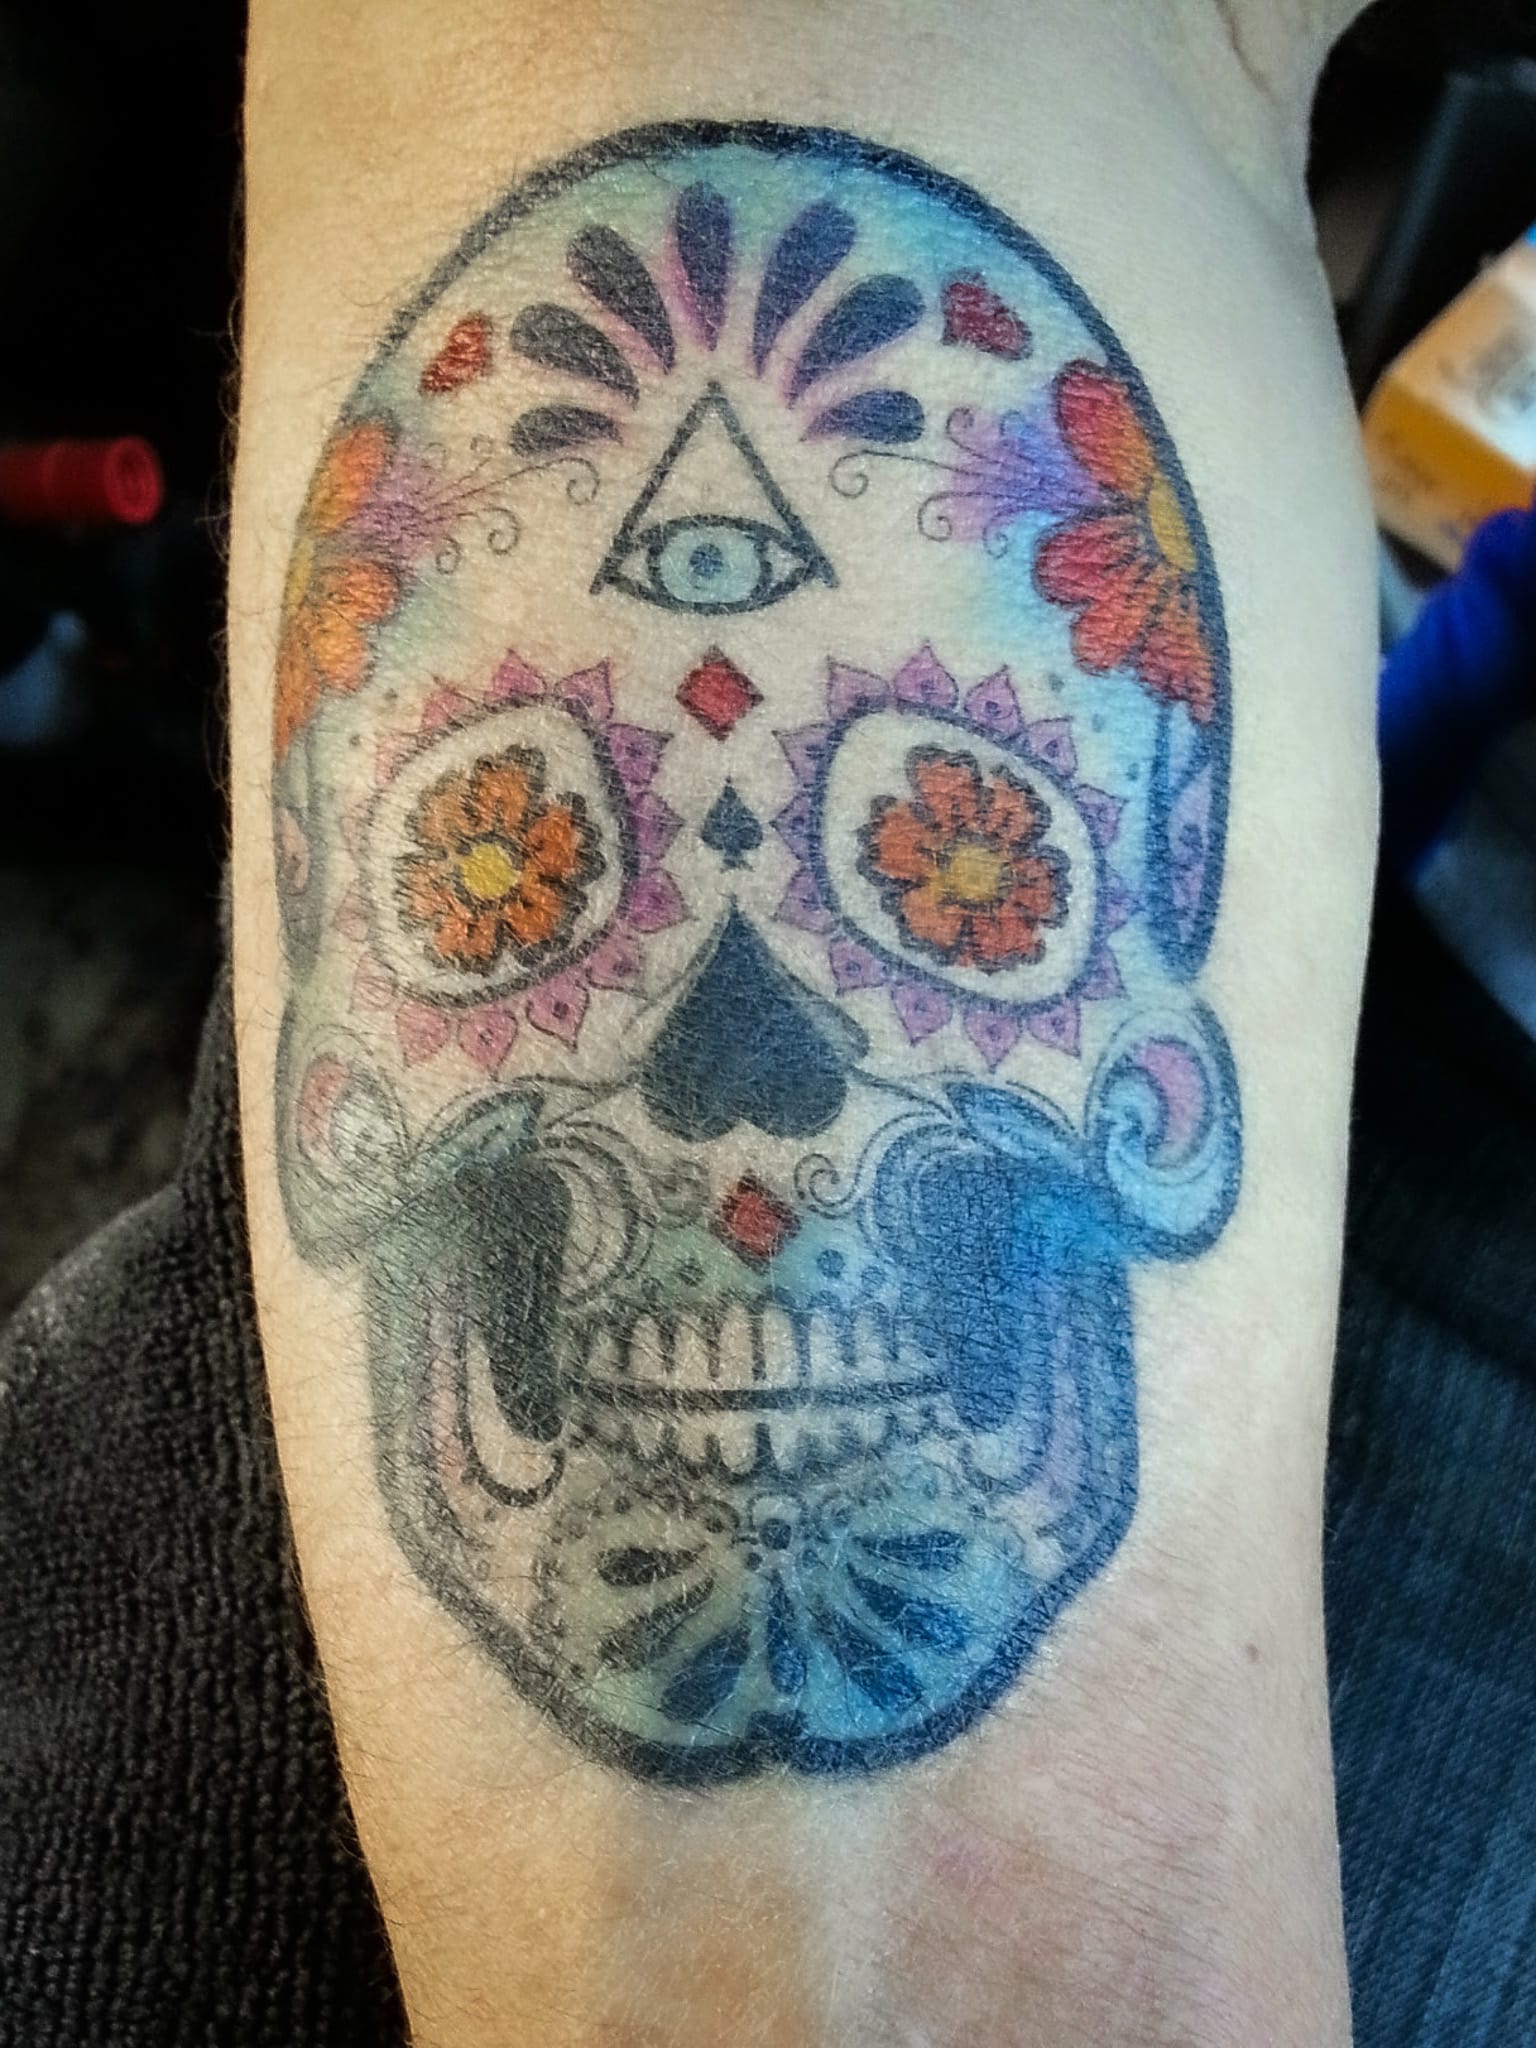 Tat Bar Temporary Tattoos - Sugar Skull with Marigolds